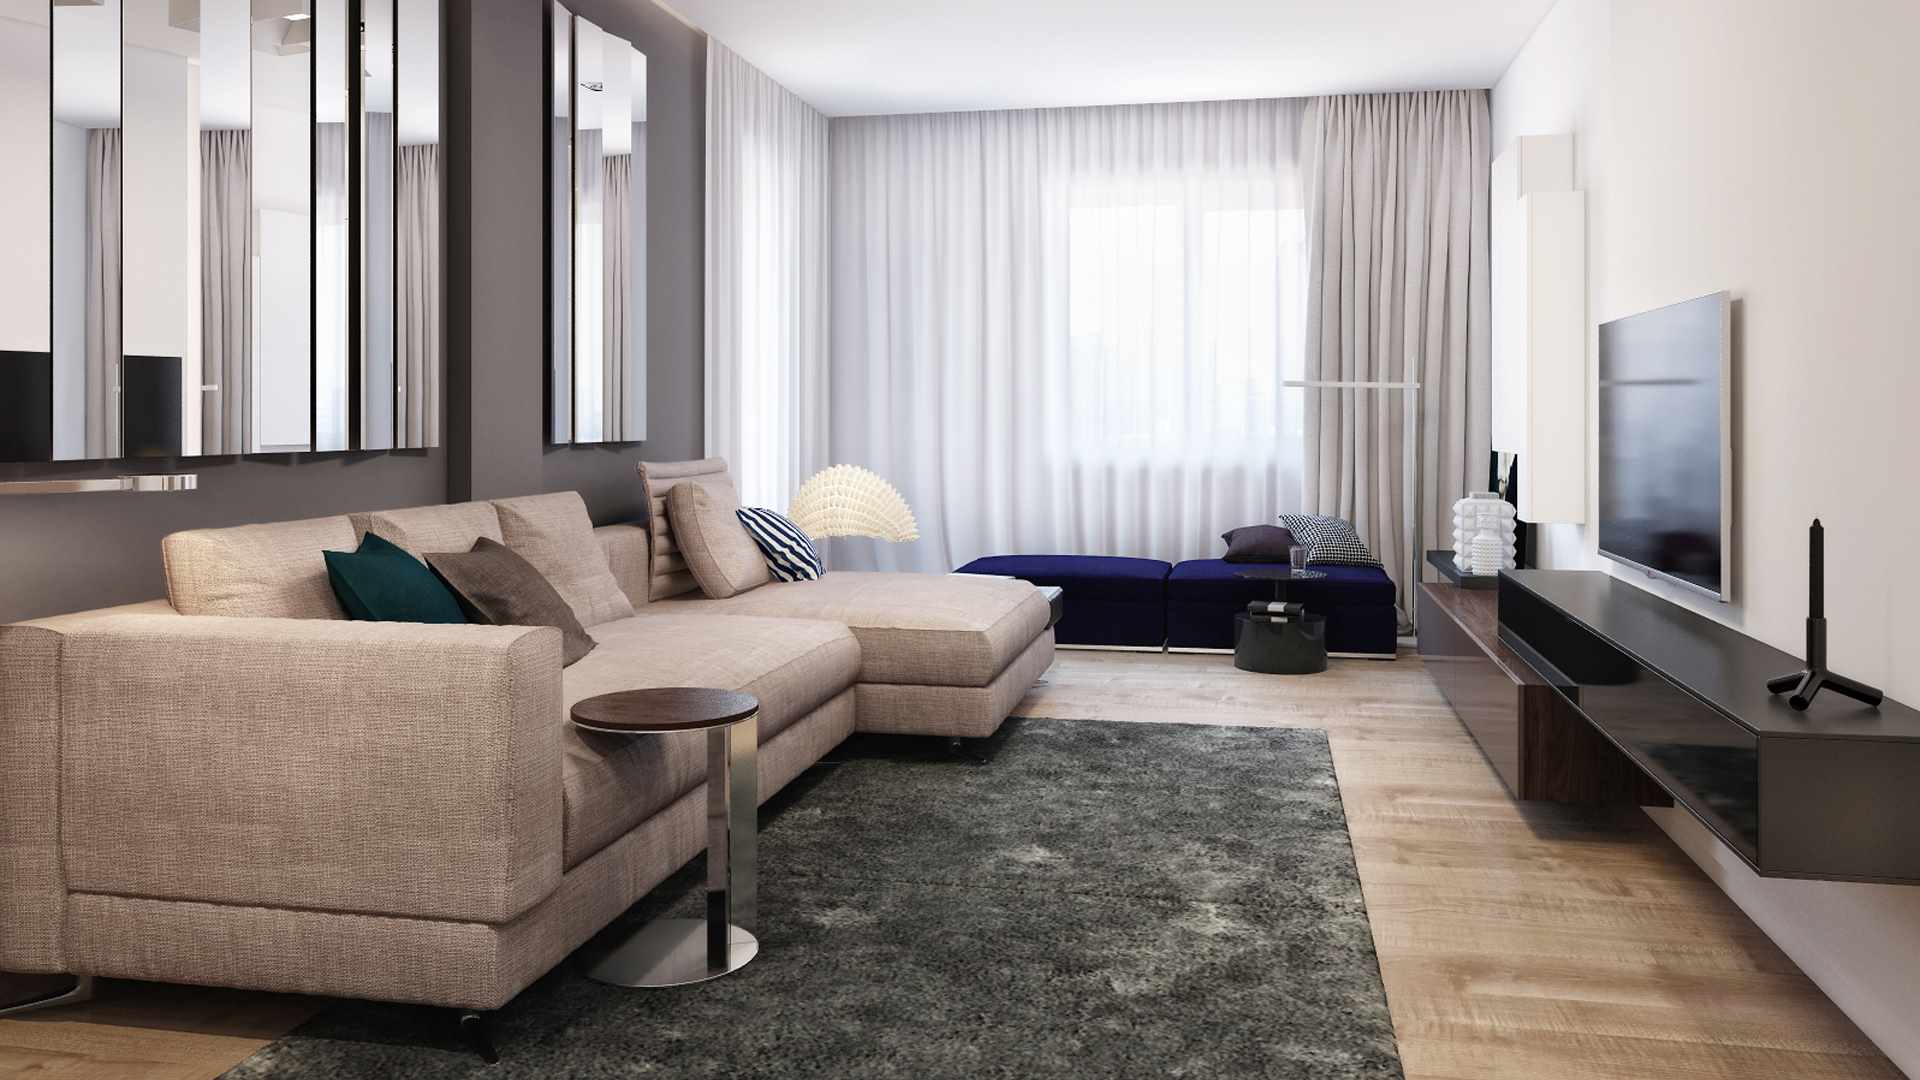 um exemplo do uso de um interior luminoso de uma sala de estar no estilo do minimalismo